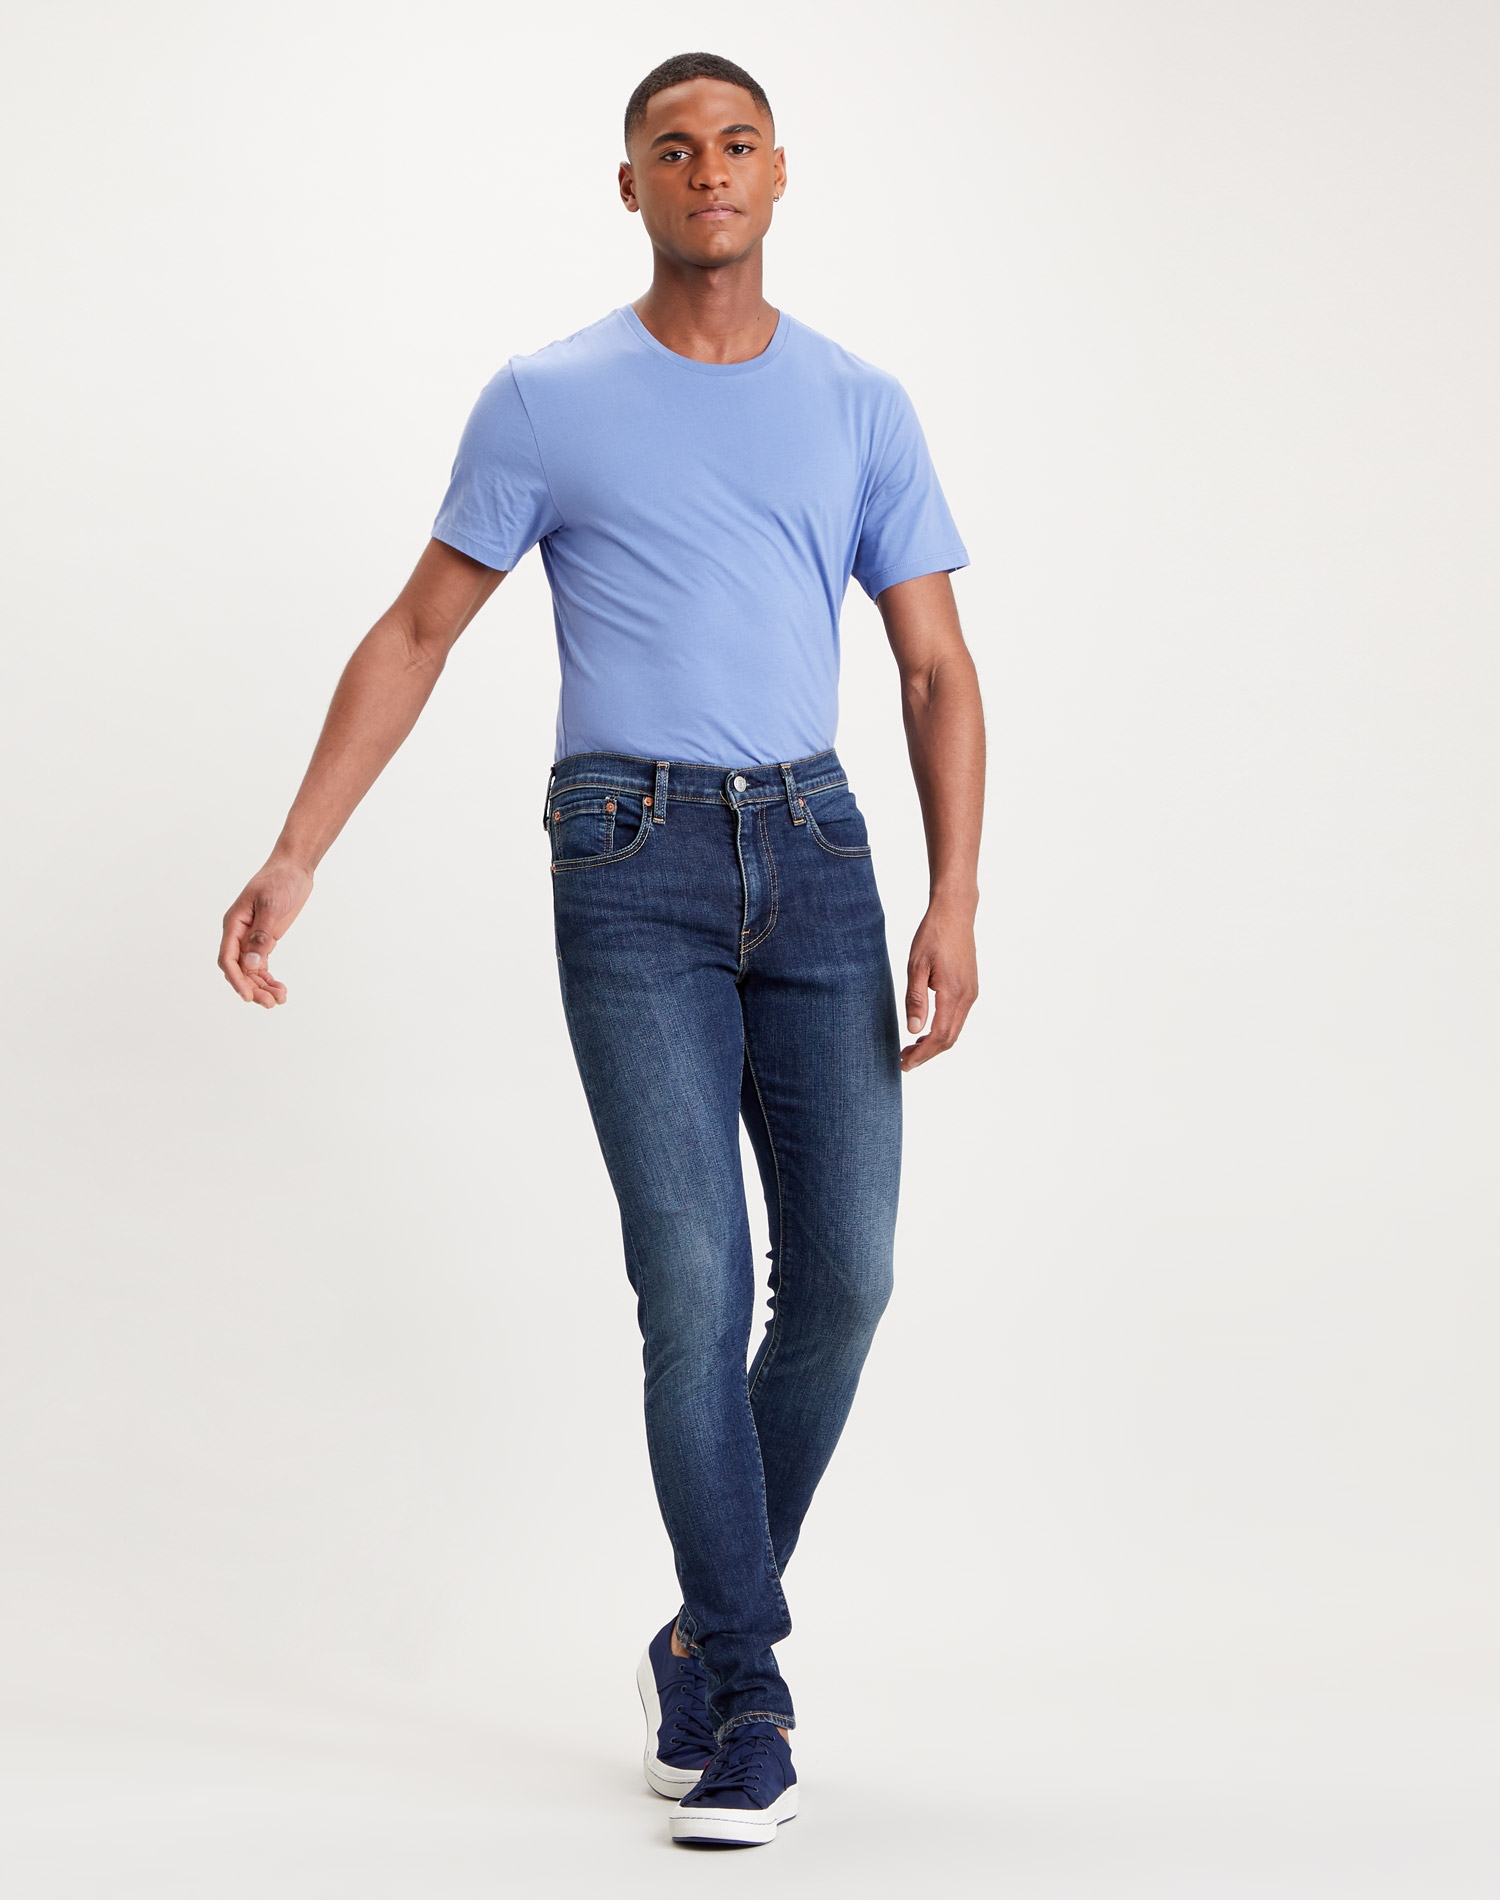 Levi's® Skinny taper™ pantalons texans d'home 84558-0019 blau fosc rentat a la pedra